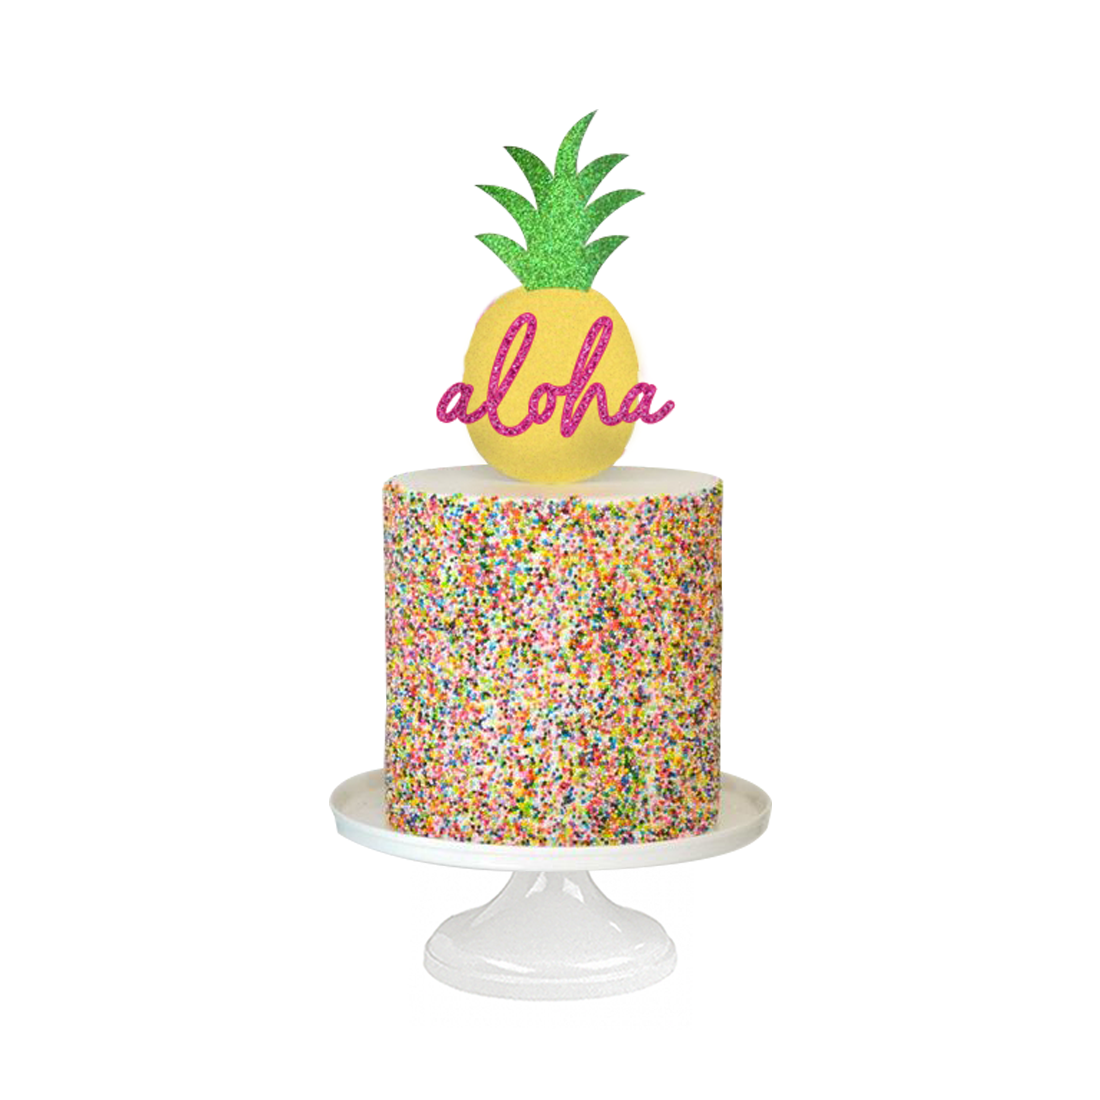 Aloha Pineapple, alegre pastel con temática hawaiana